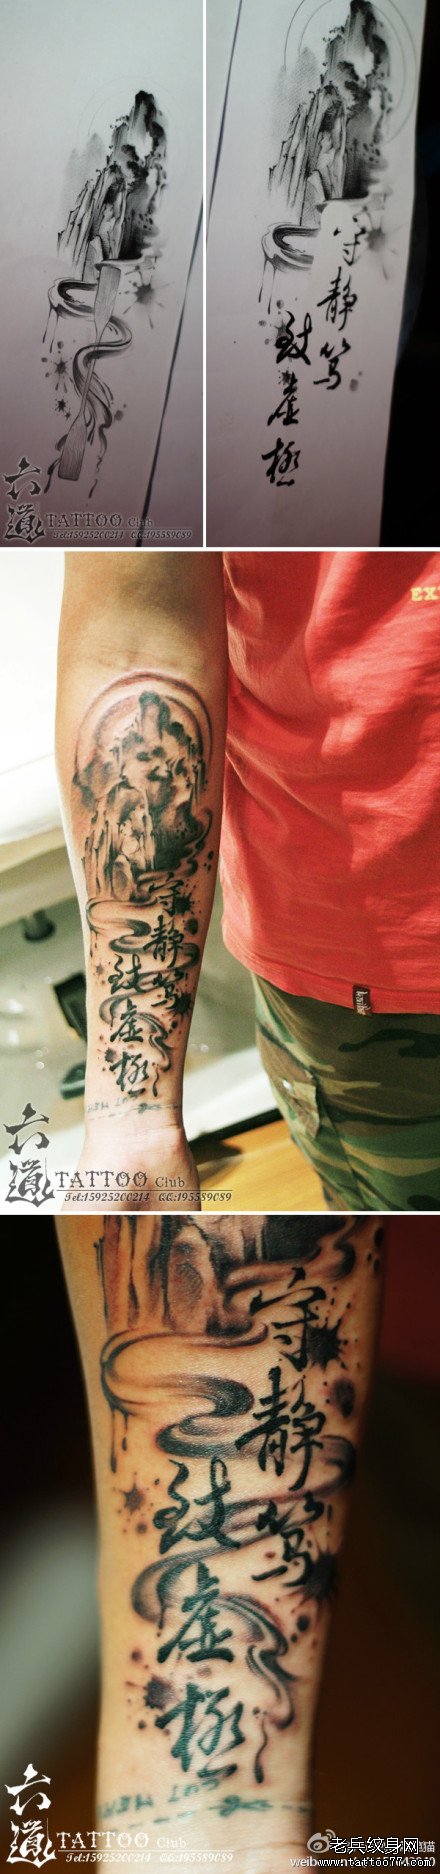 手臂时尚经典的山水画与汉字纹身图案